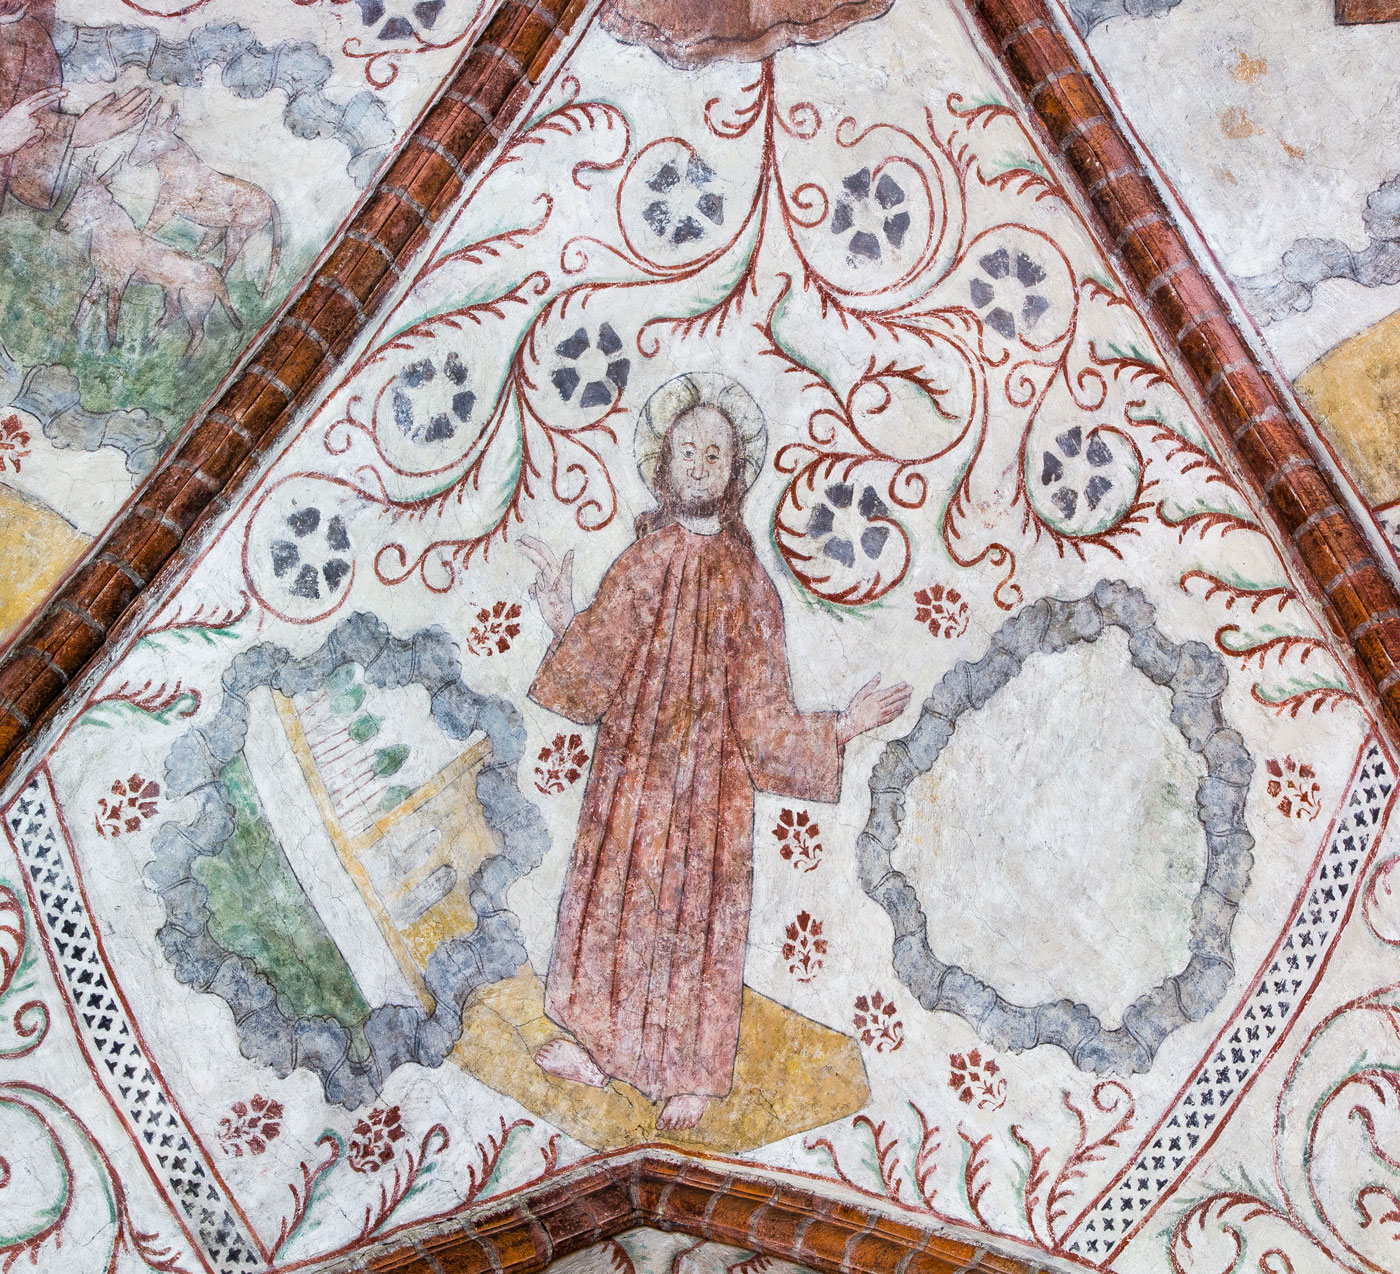 Kristus som skaparen, stående mellan två molncirklar (Ö) - Helga Trefaldighets kyrka